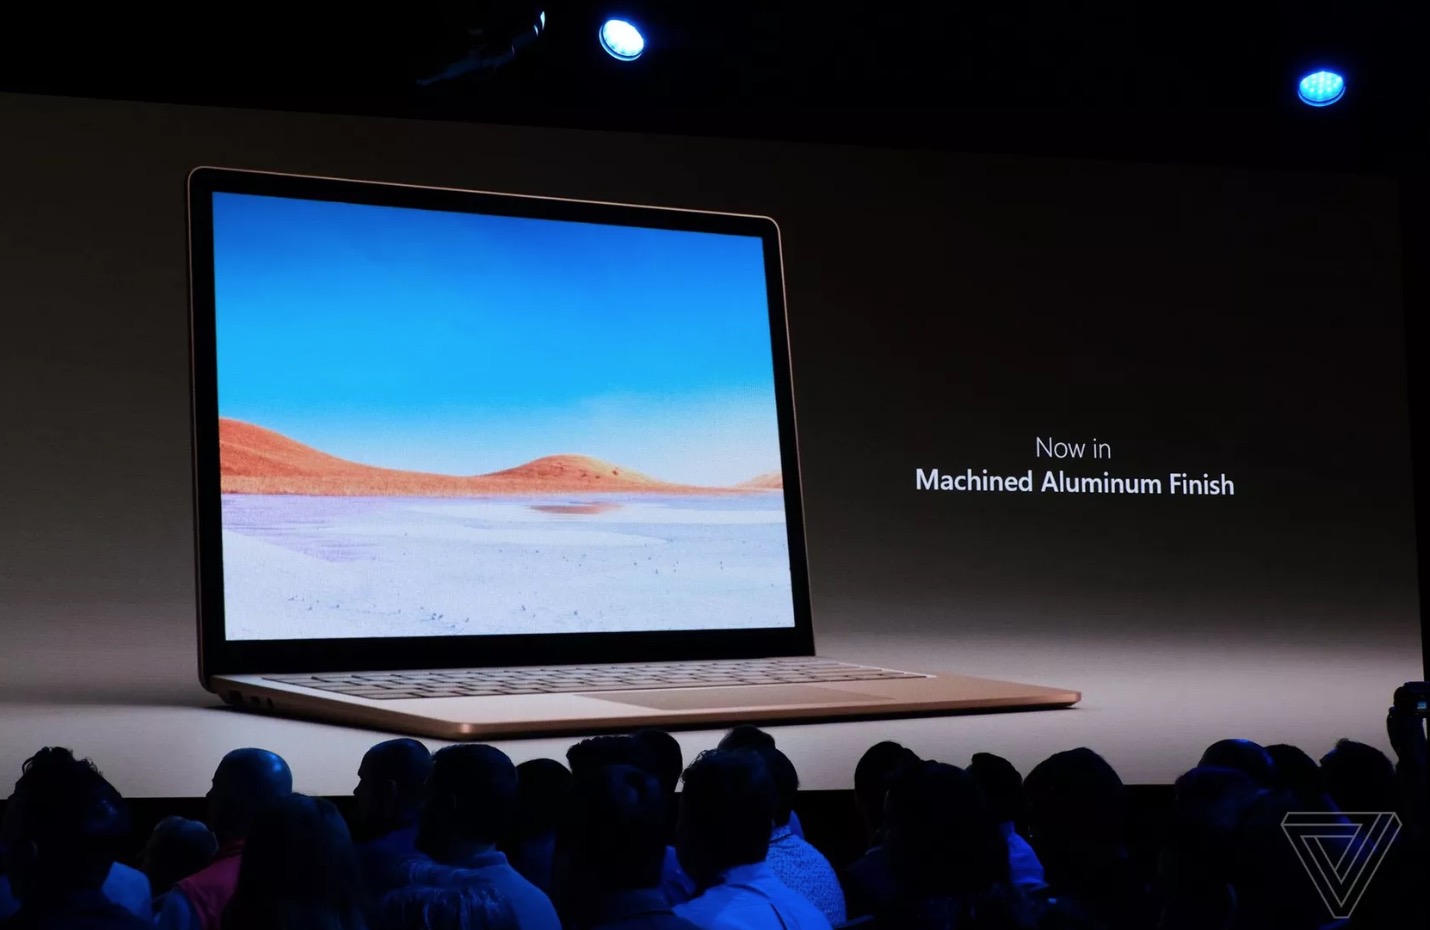 Surface Laptop 3 ra mắt với 2 phiên bản màn
hình 13 inch và 15 inch đã có USB Type-C, giá từ 999 USD